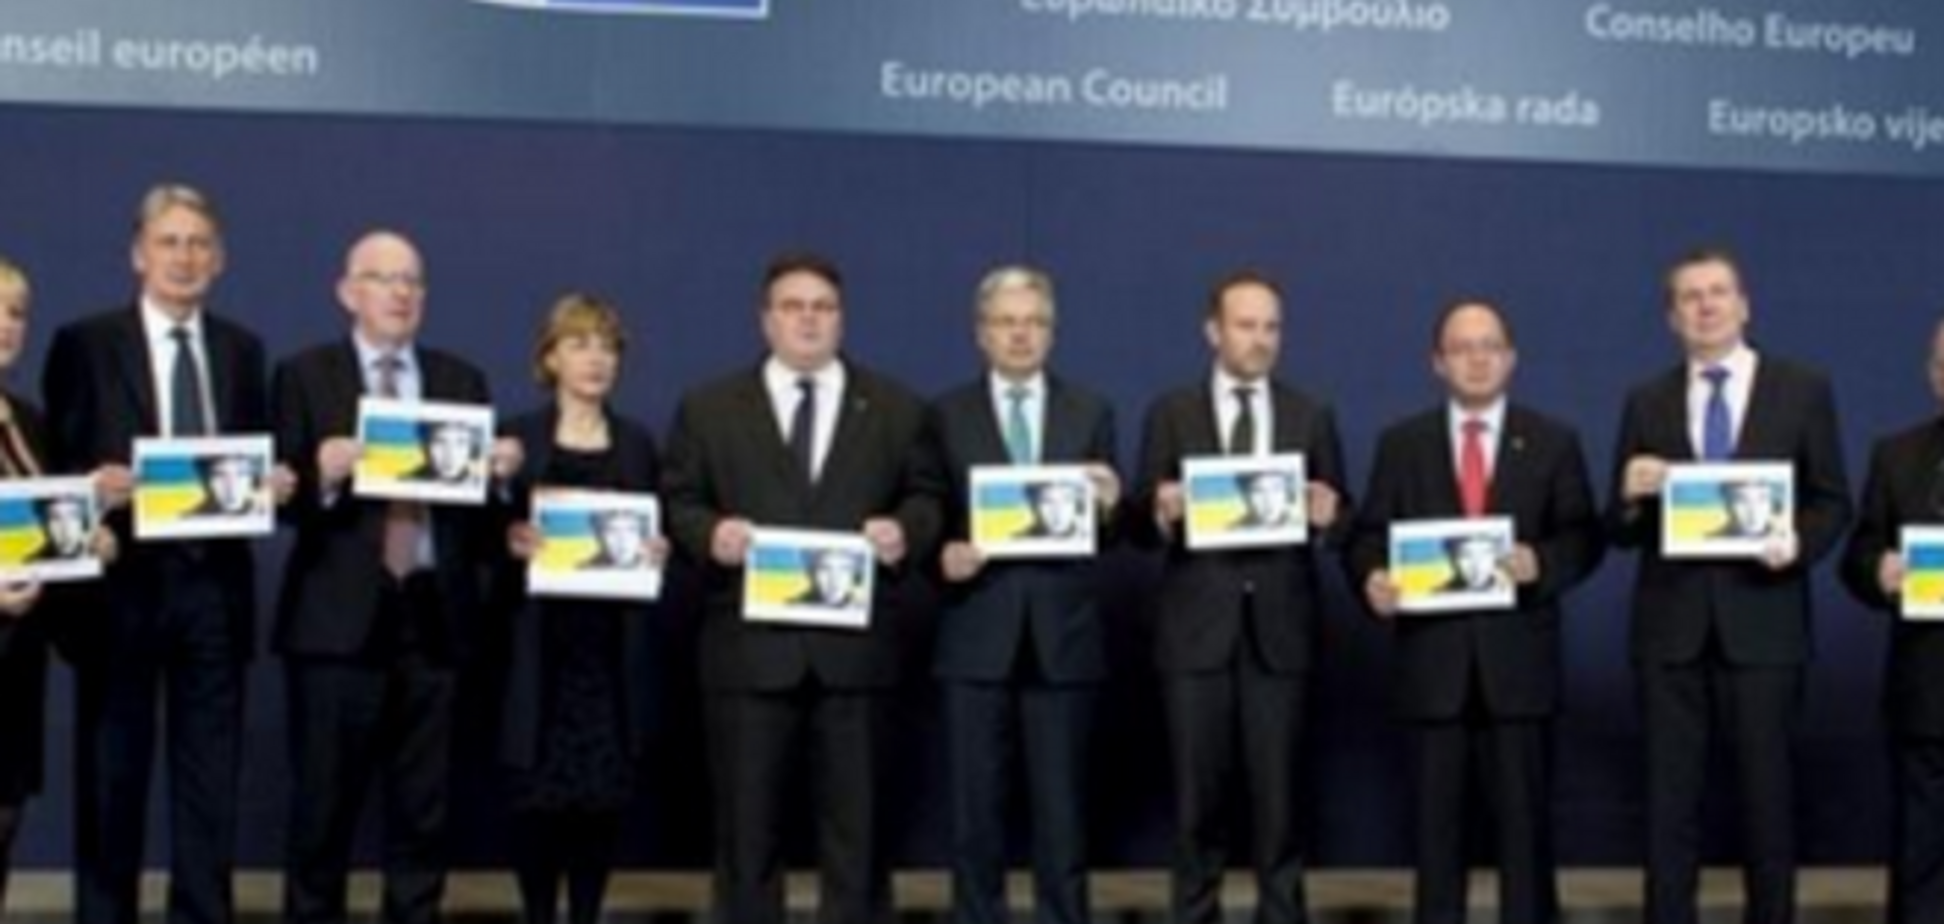 МЗС Литви зажадало від Росії негайного звільнення Савченко і всіх полонених українців